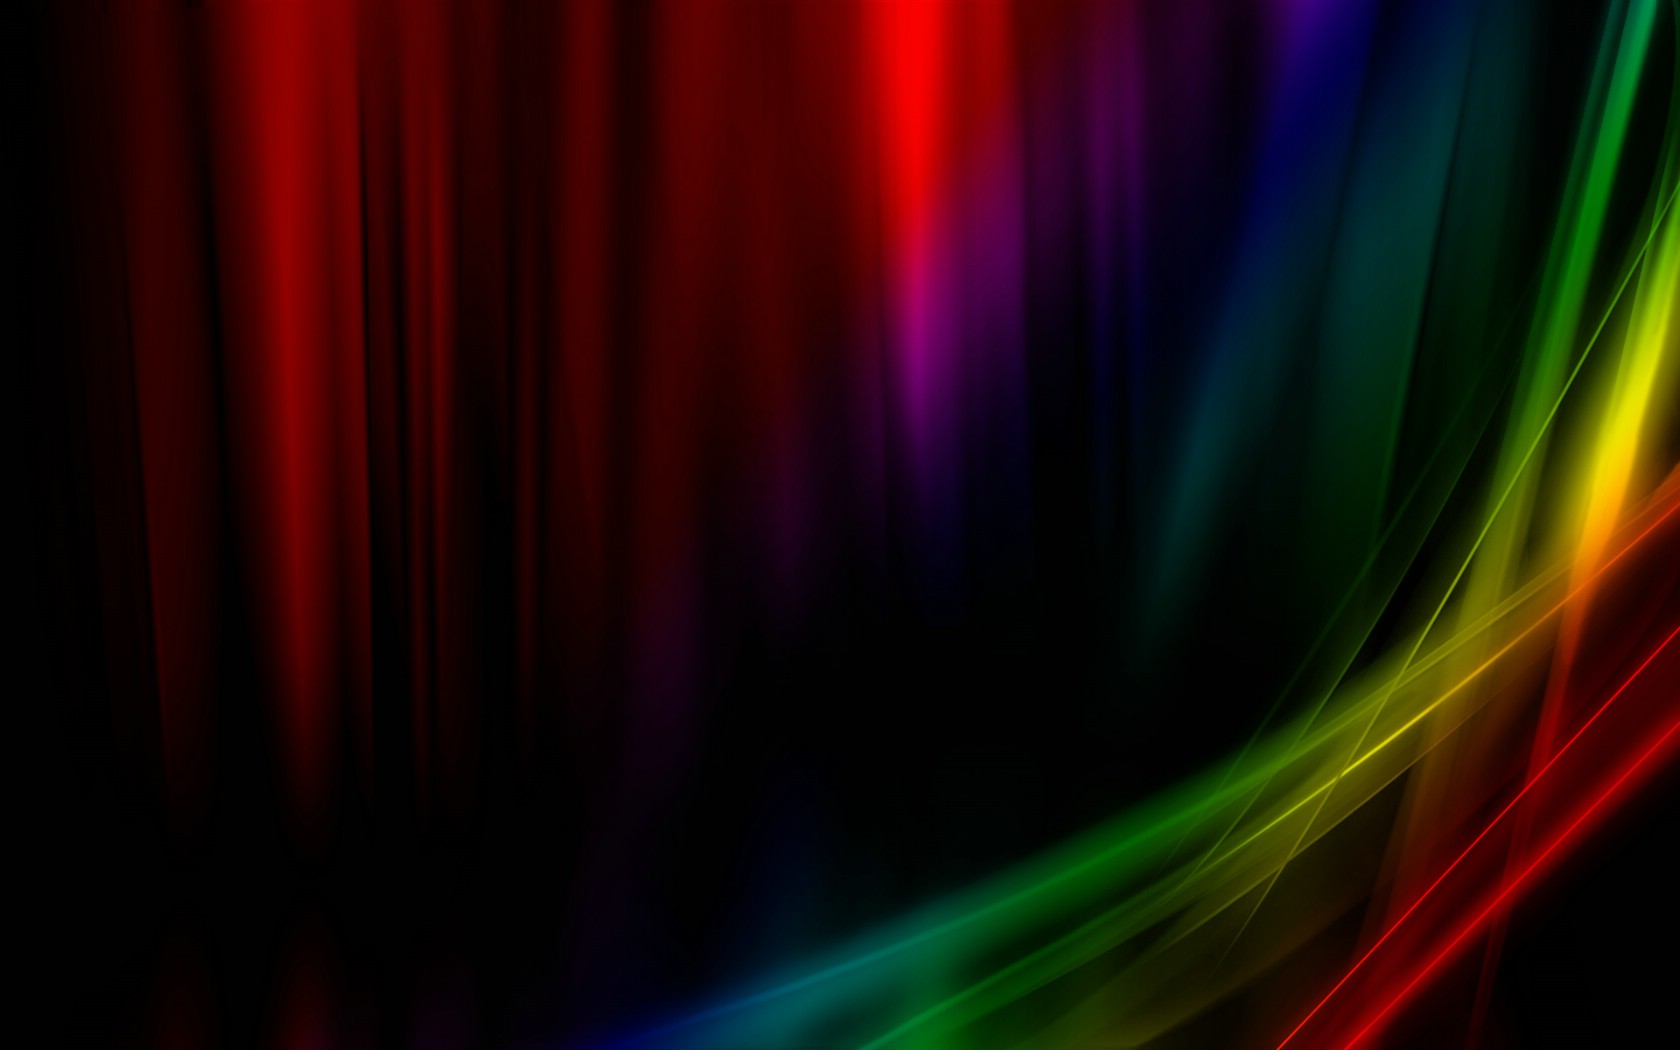 壁纸1680x1050抽象背景 彩虹之色 彩虹之色 电脑光炫效果设计壁纸 抽象背景 彩虹之色壁纸 抽象背景 彩虹之色图片 抽象背景 彩虹之色素材 插画壁纸 插画图库 插画图片素材桌面壁纸